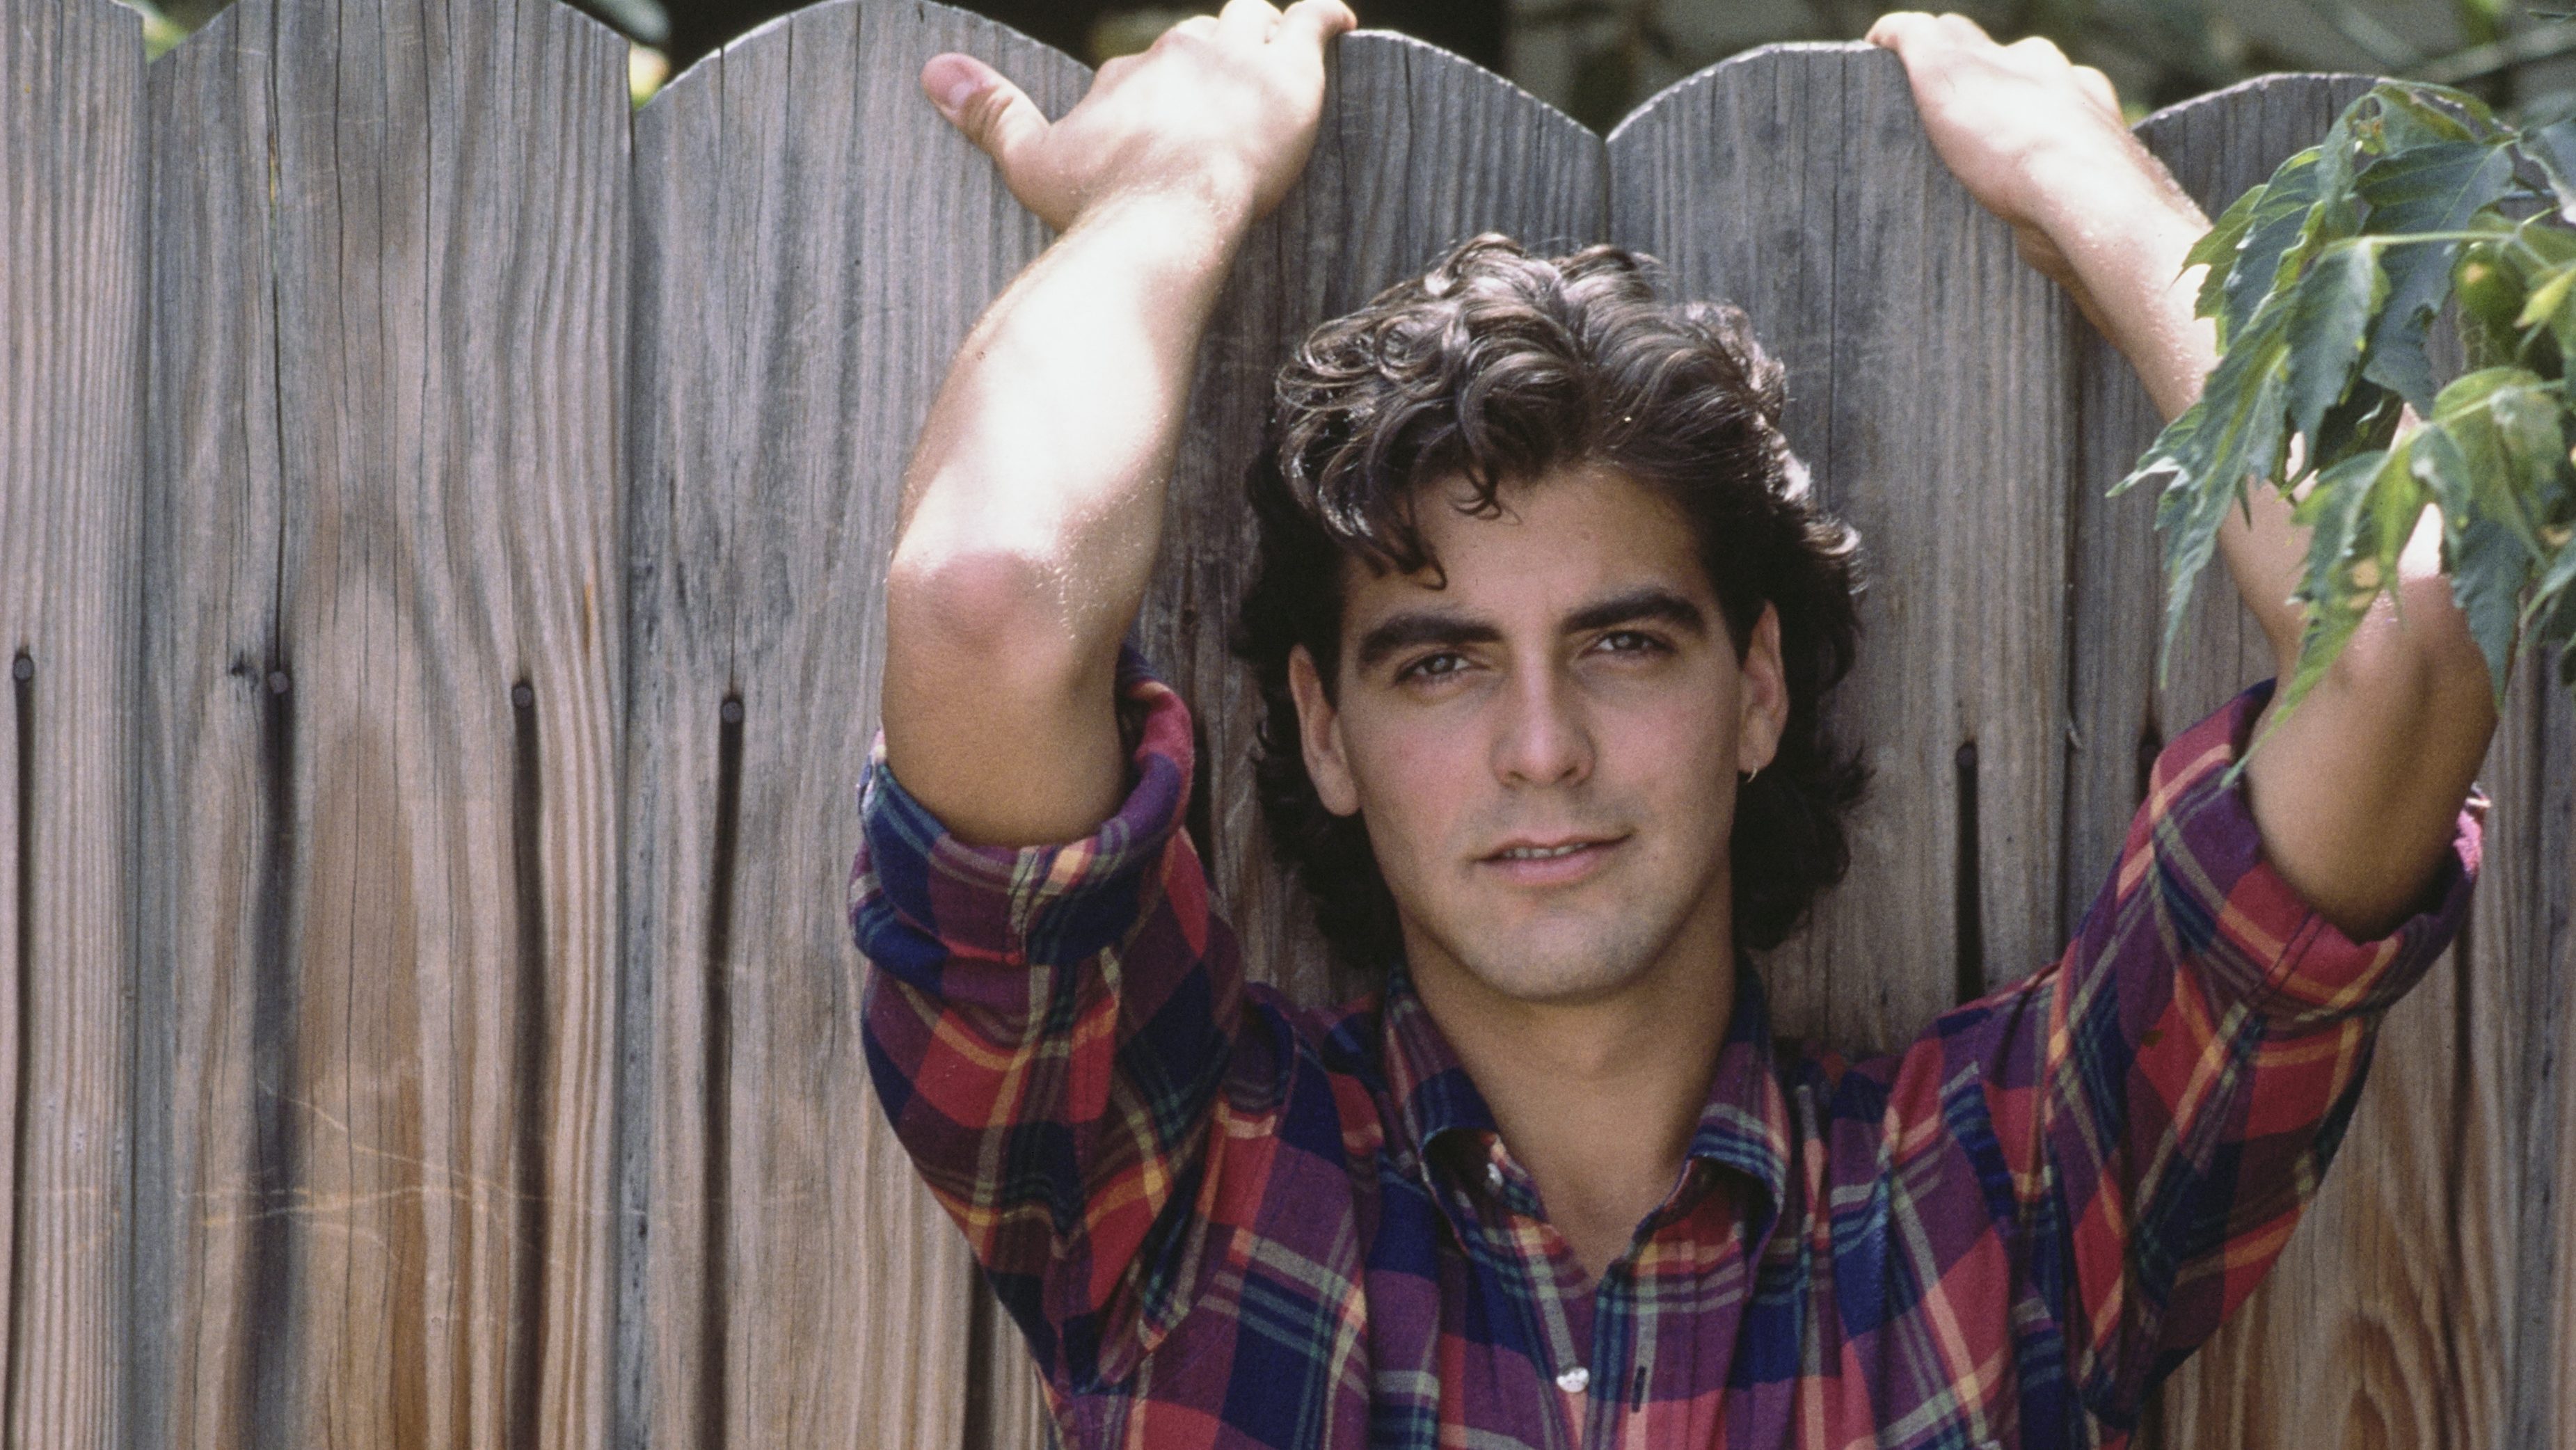 George Clooney, 1985